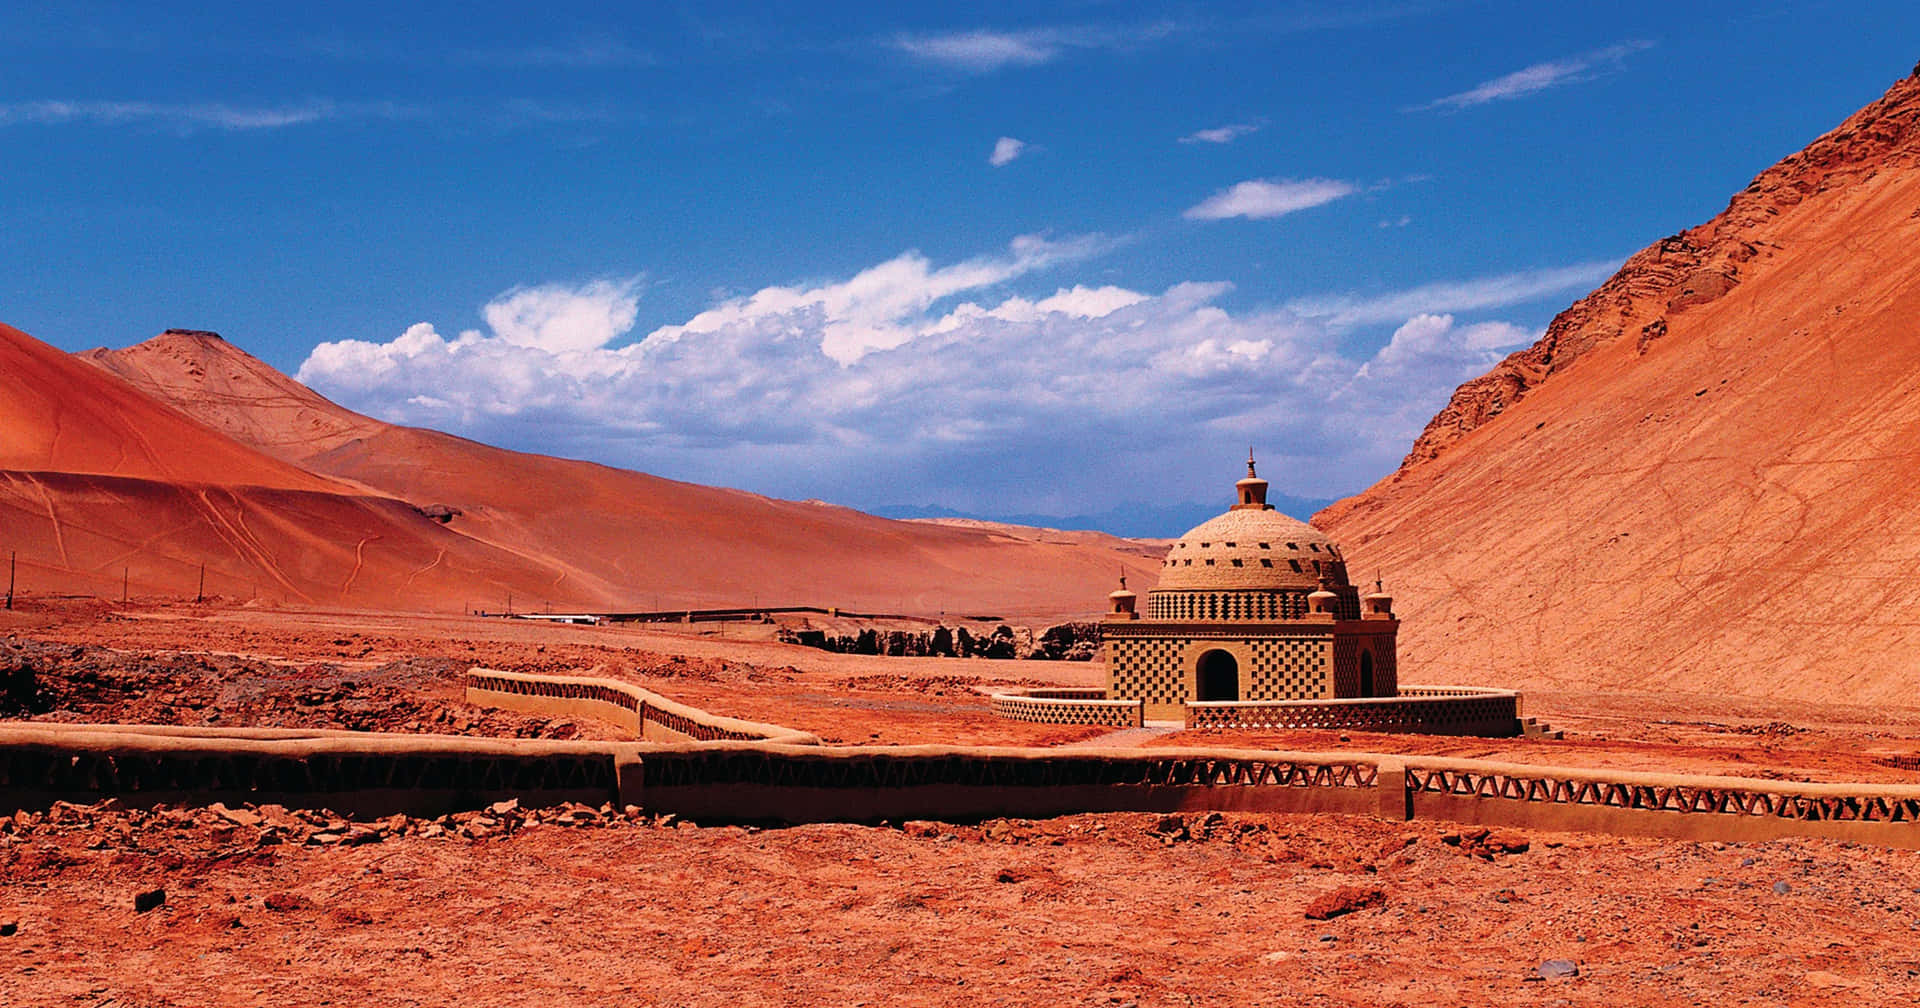 Unpequeño Edificio En El Desierto